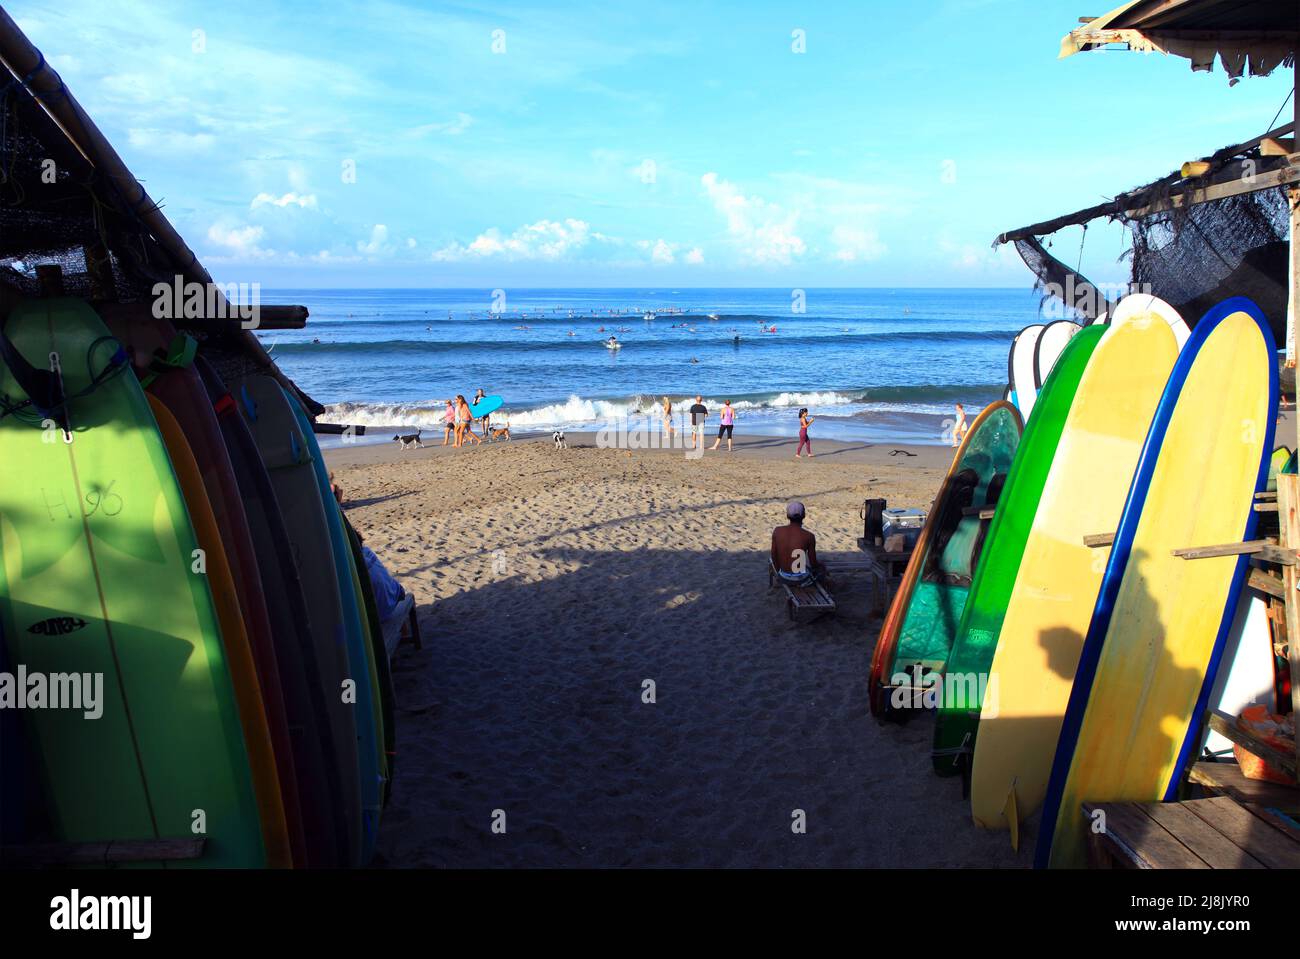 Vista della spiaggia di Batu Bolong a Canggu, Bali, Indonesia dal parcheggio con tavole da surf a noleggio, persone che si rilassano sulla spiaggia e surfisti in onde. Foto Stock